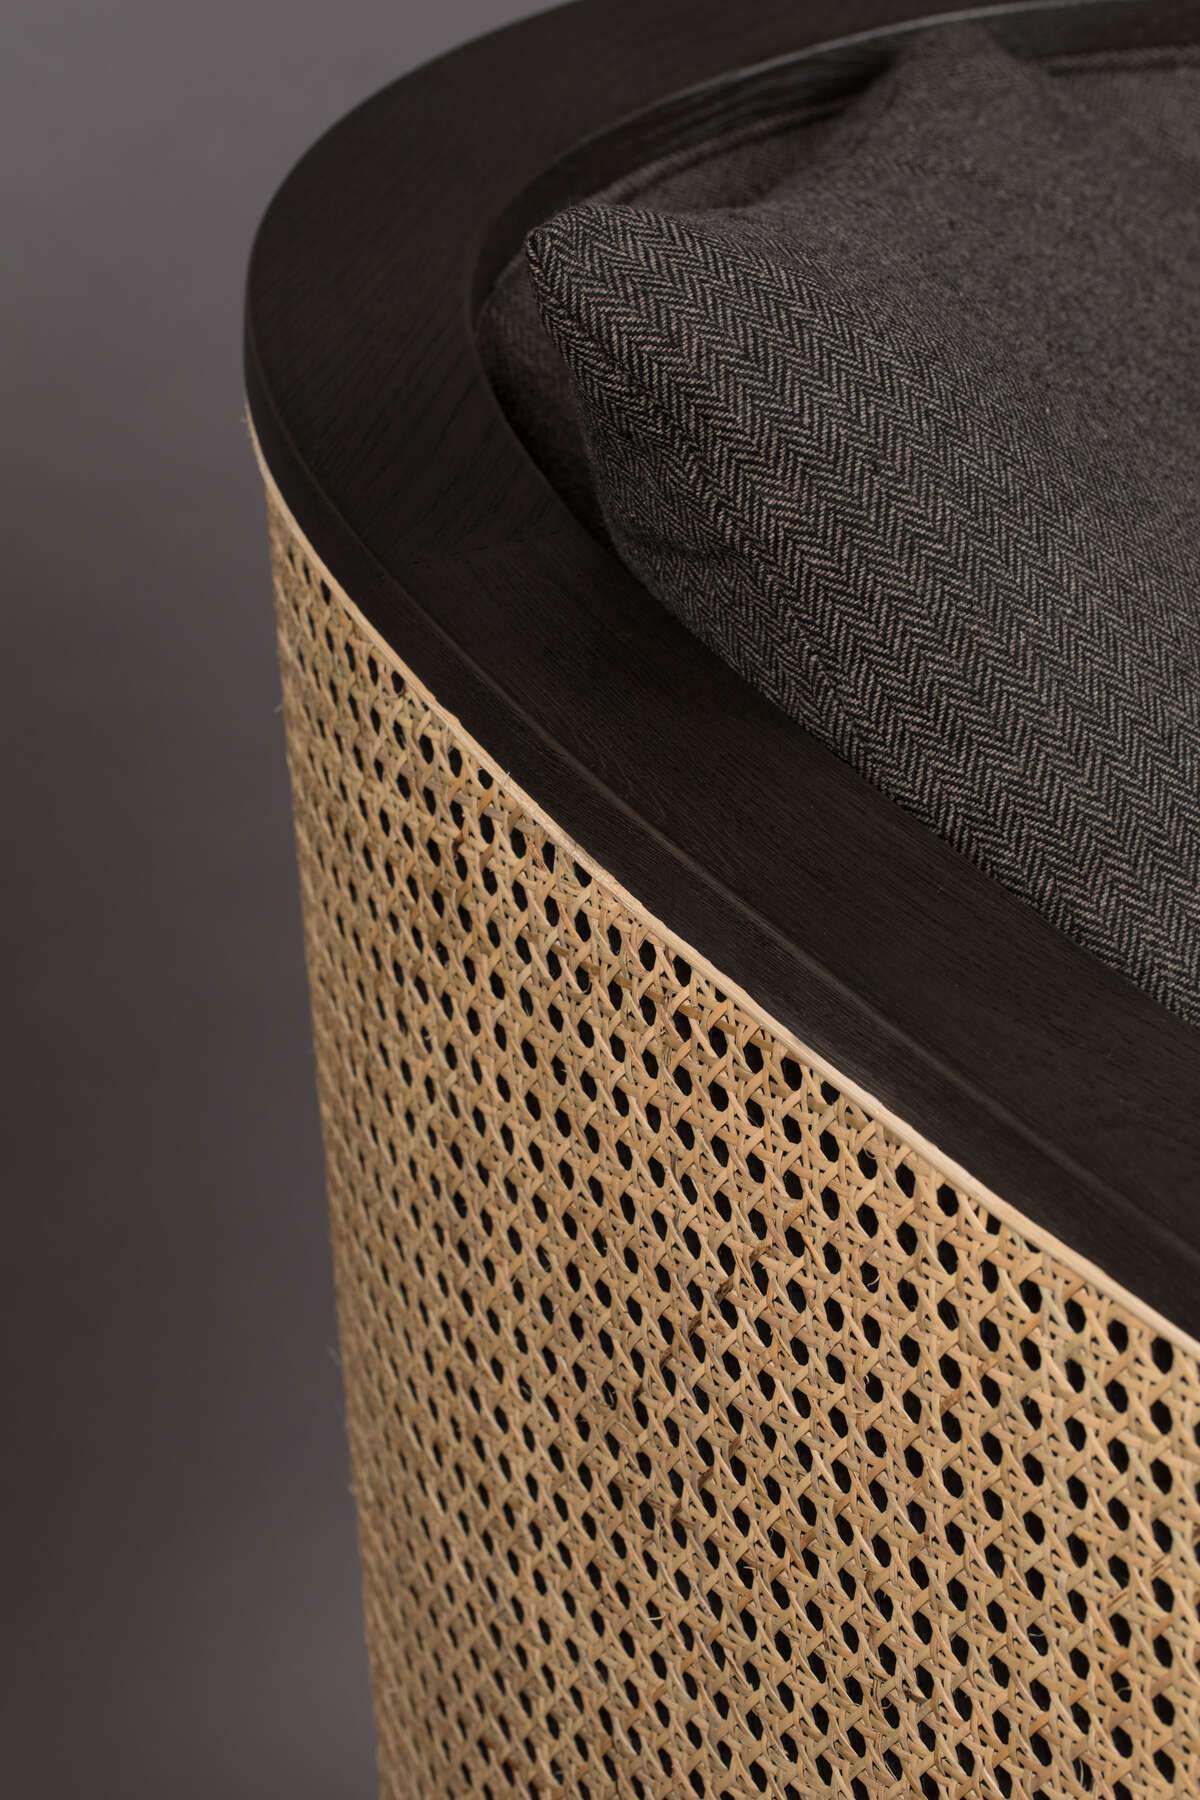 AMARON armchair grey, Dutchbone, Eye on Design